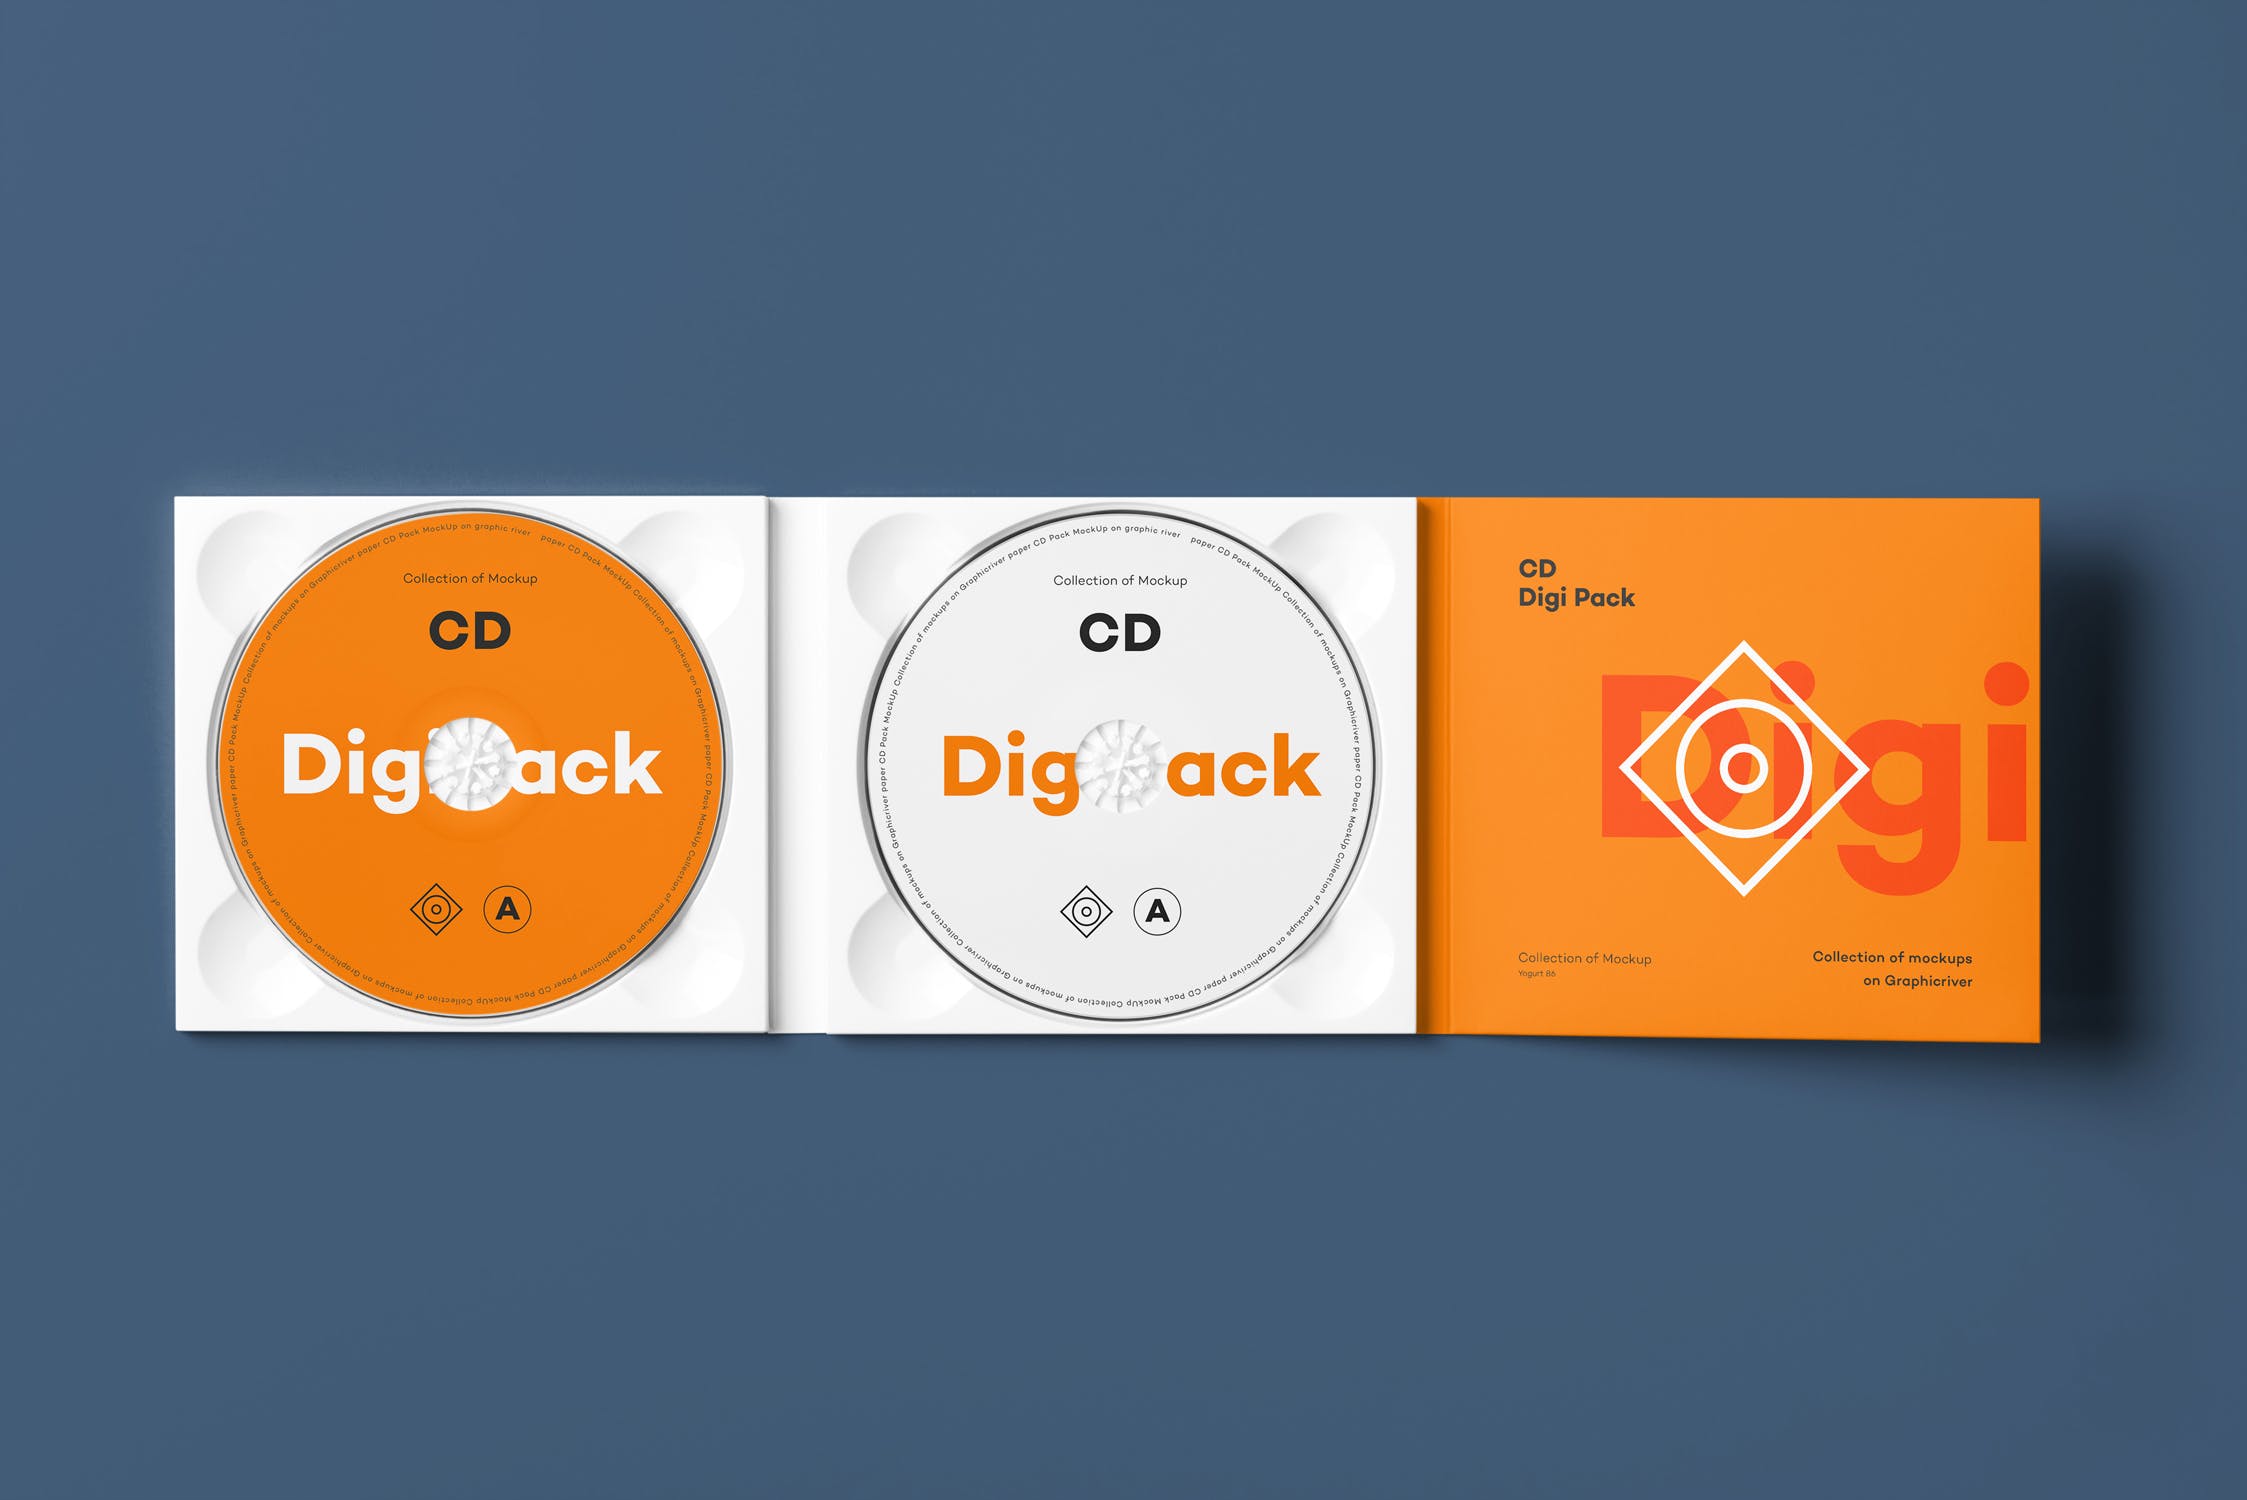 CD光碟封面&包装盒设计图第一素材精选模板v8 CD Digi Pack Mock-up 8插图(7)